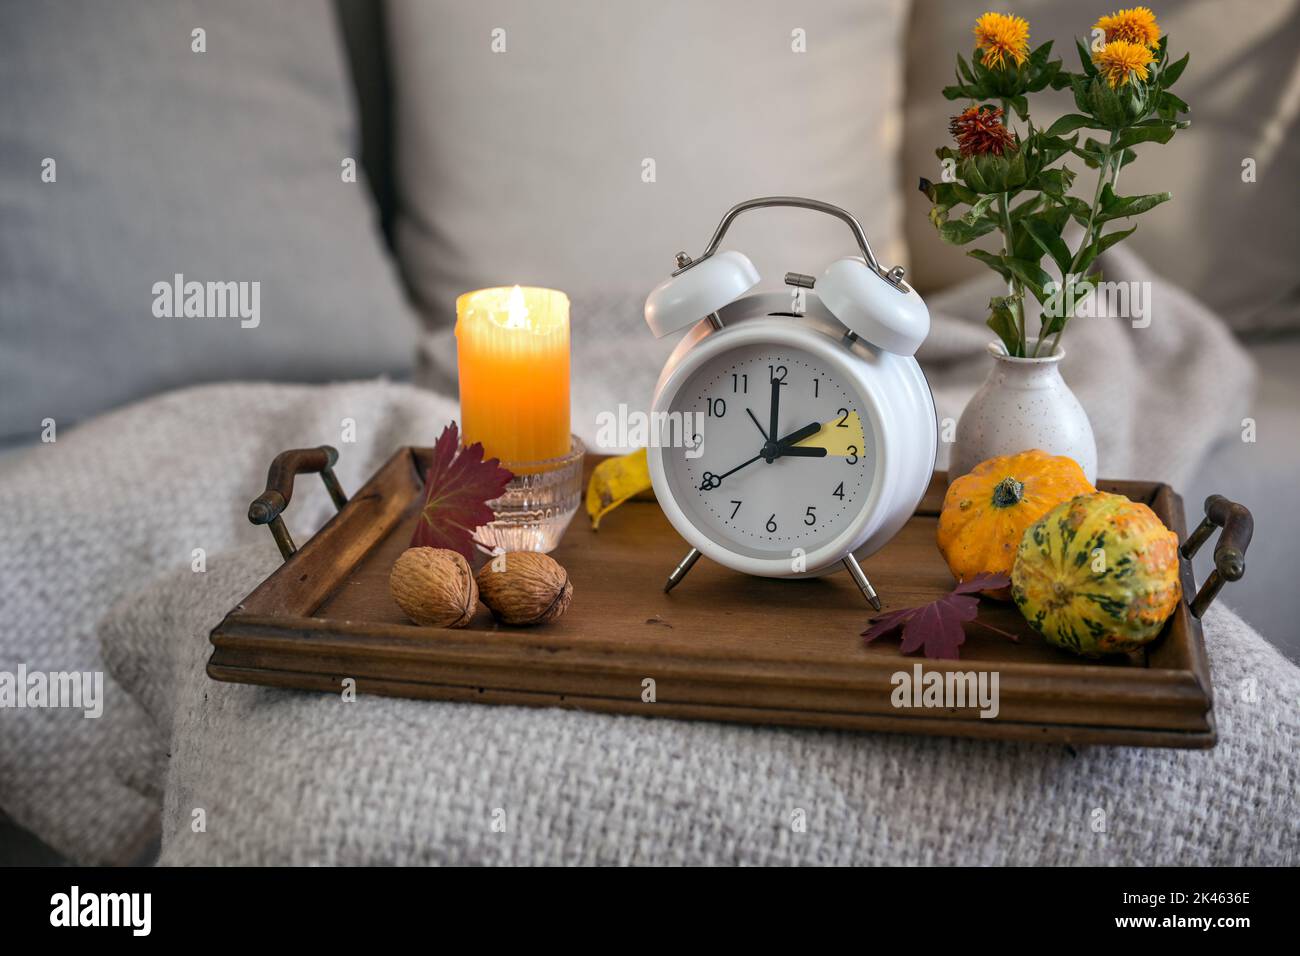 Vintage-Wecker mit einer Stunde Rückfall nach der Sommerzeit, Holztablett mit Kerze und Herbstdekoration auf einem Bett mit natürlicher Decke Stockfoto